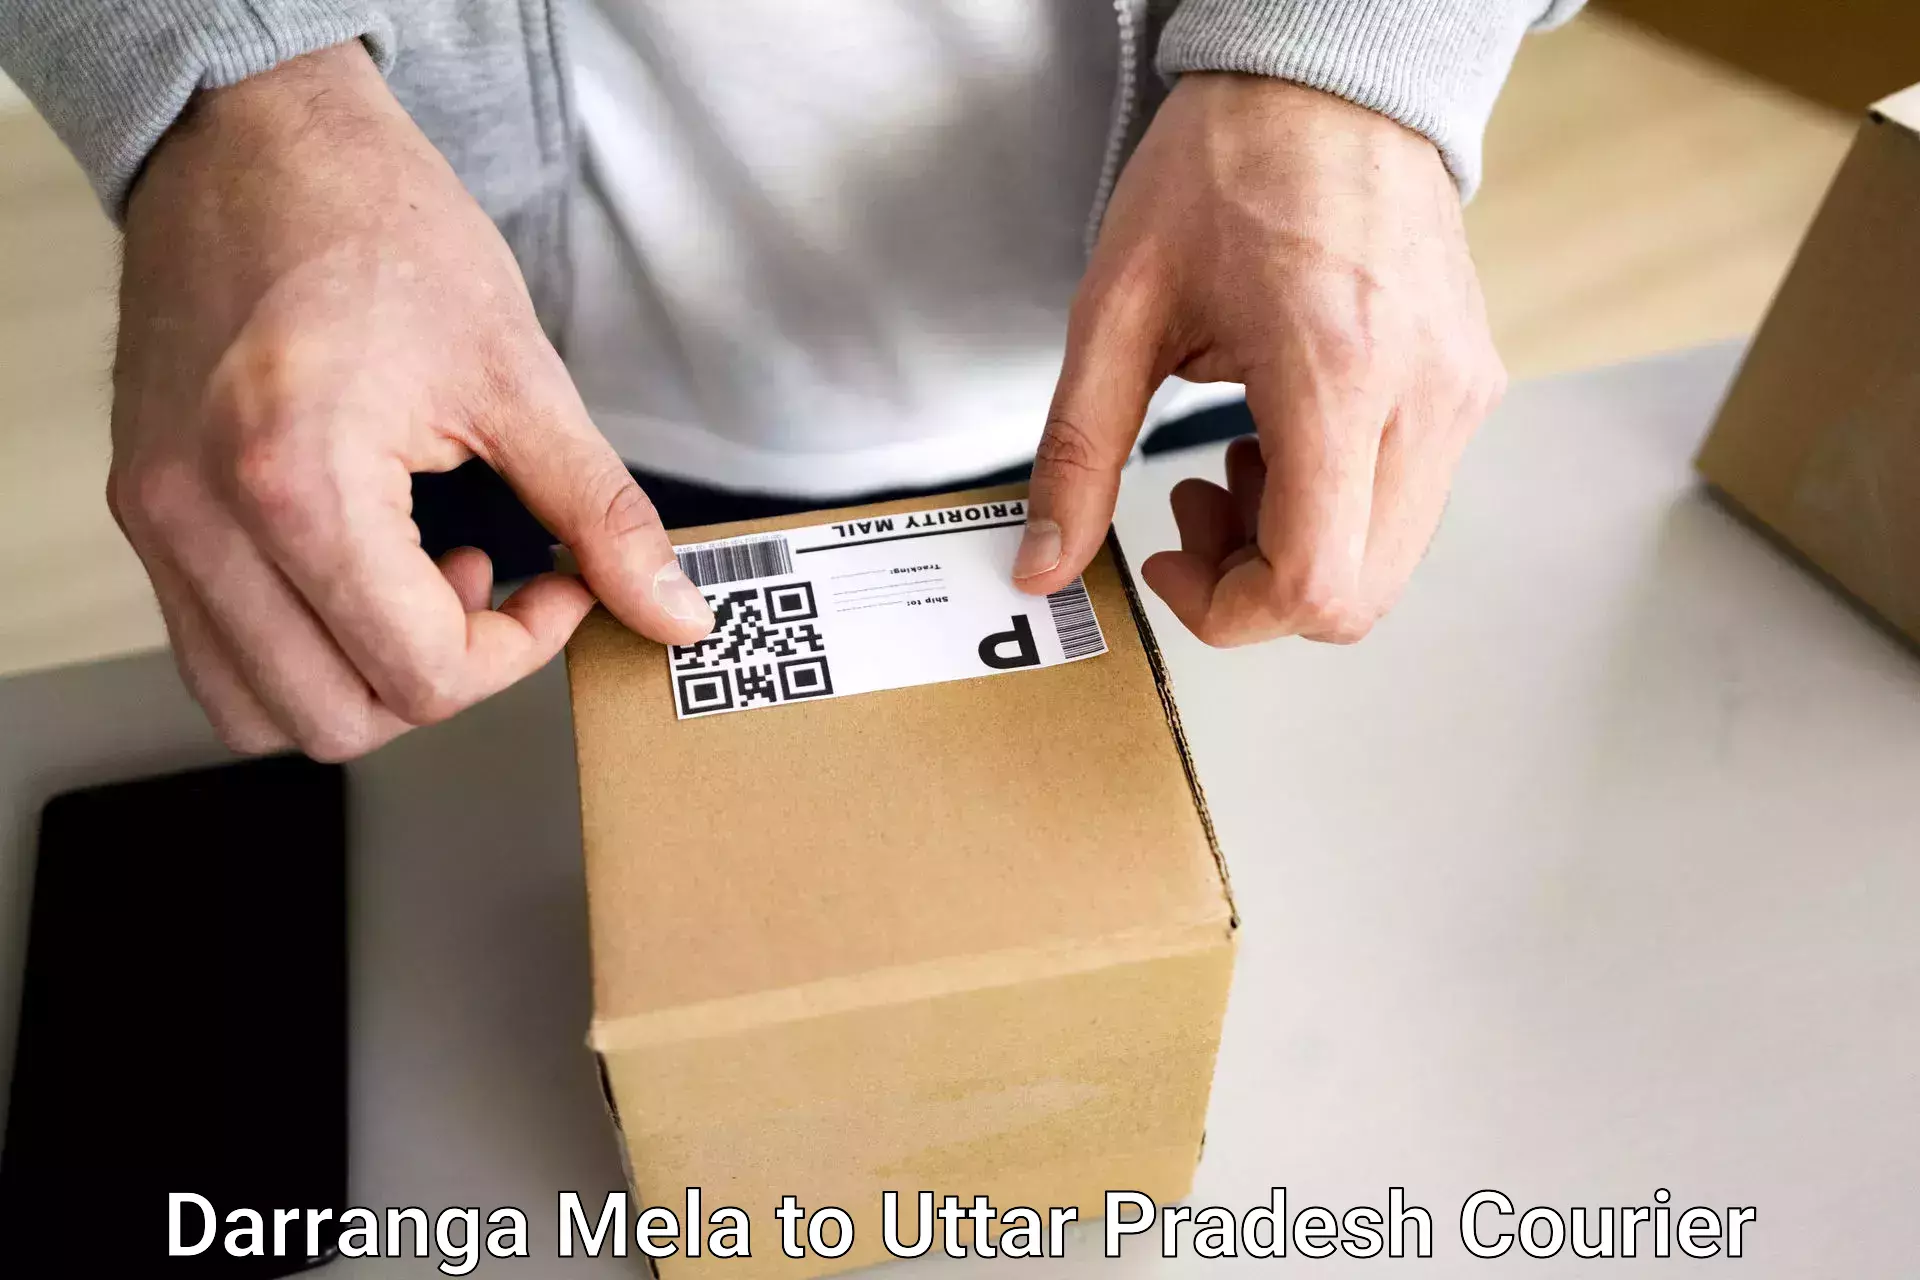 Baggage courier logistics Darranga Mela to Amity University Gautam Budh Nagar